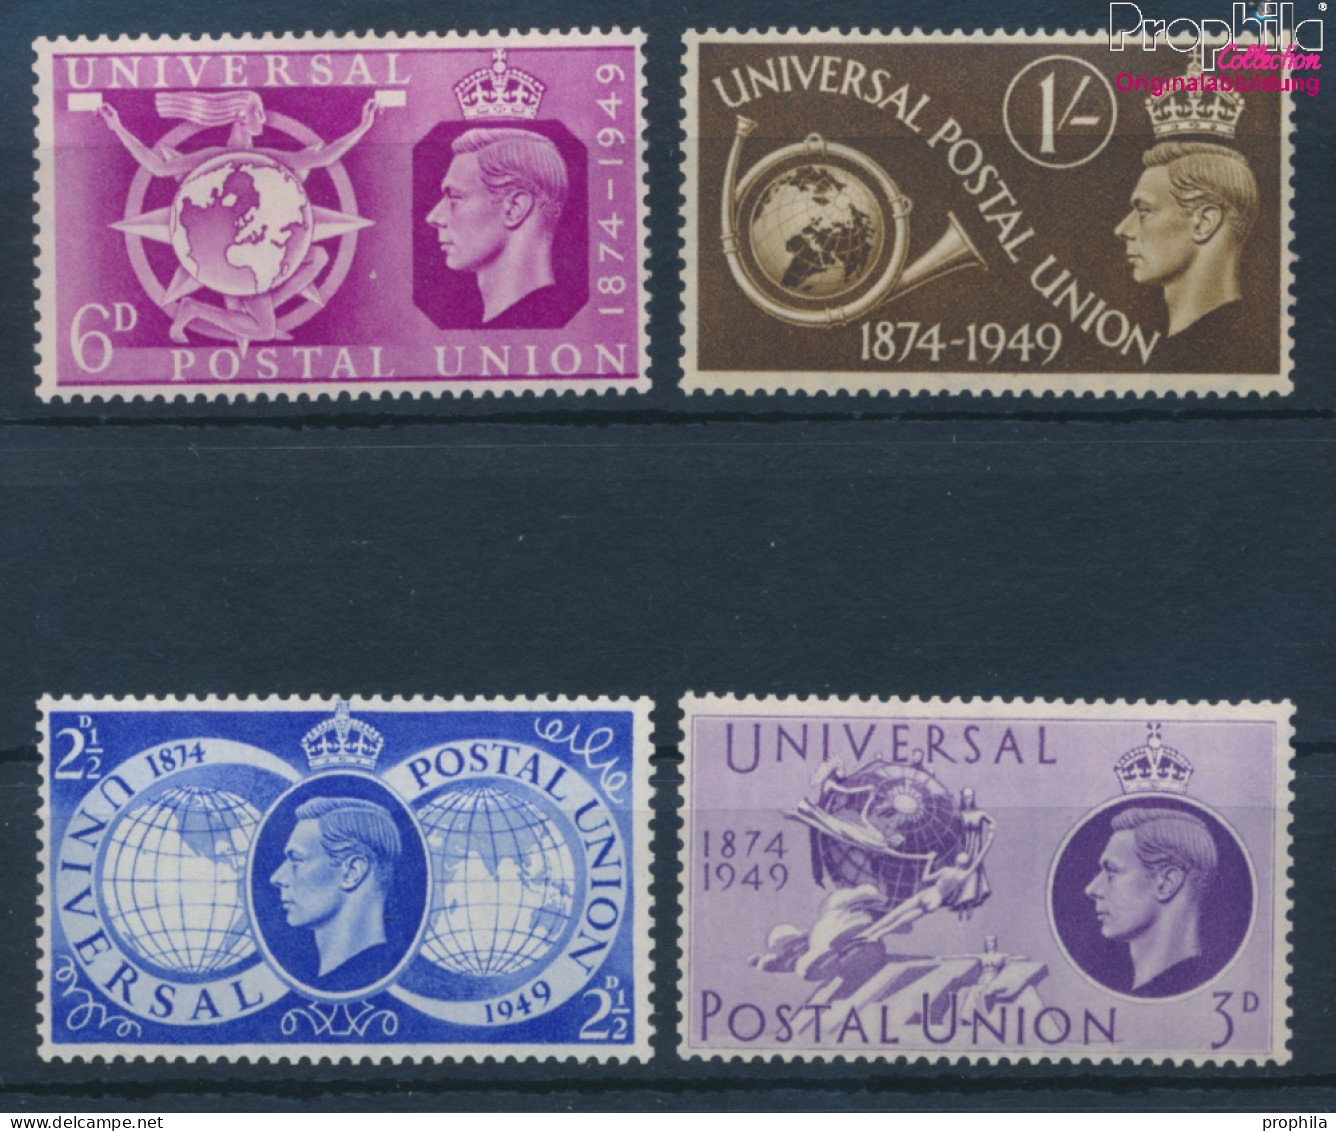 Großbritannien 241-244 (kompl.Ausg.) Postfrisch 1949 75 Jahre UPU (10398203 - Ongebruikt